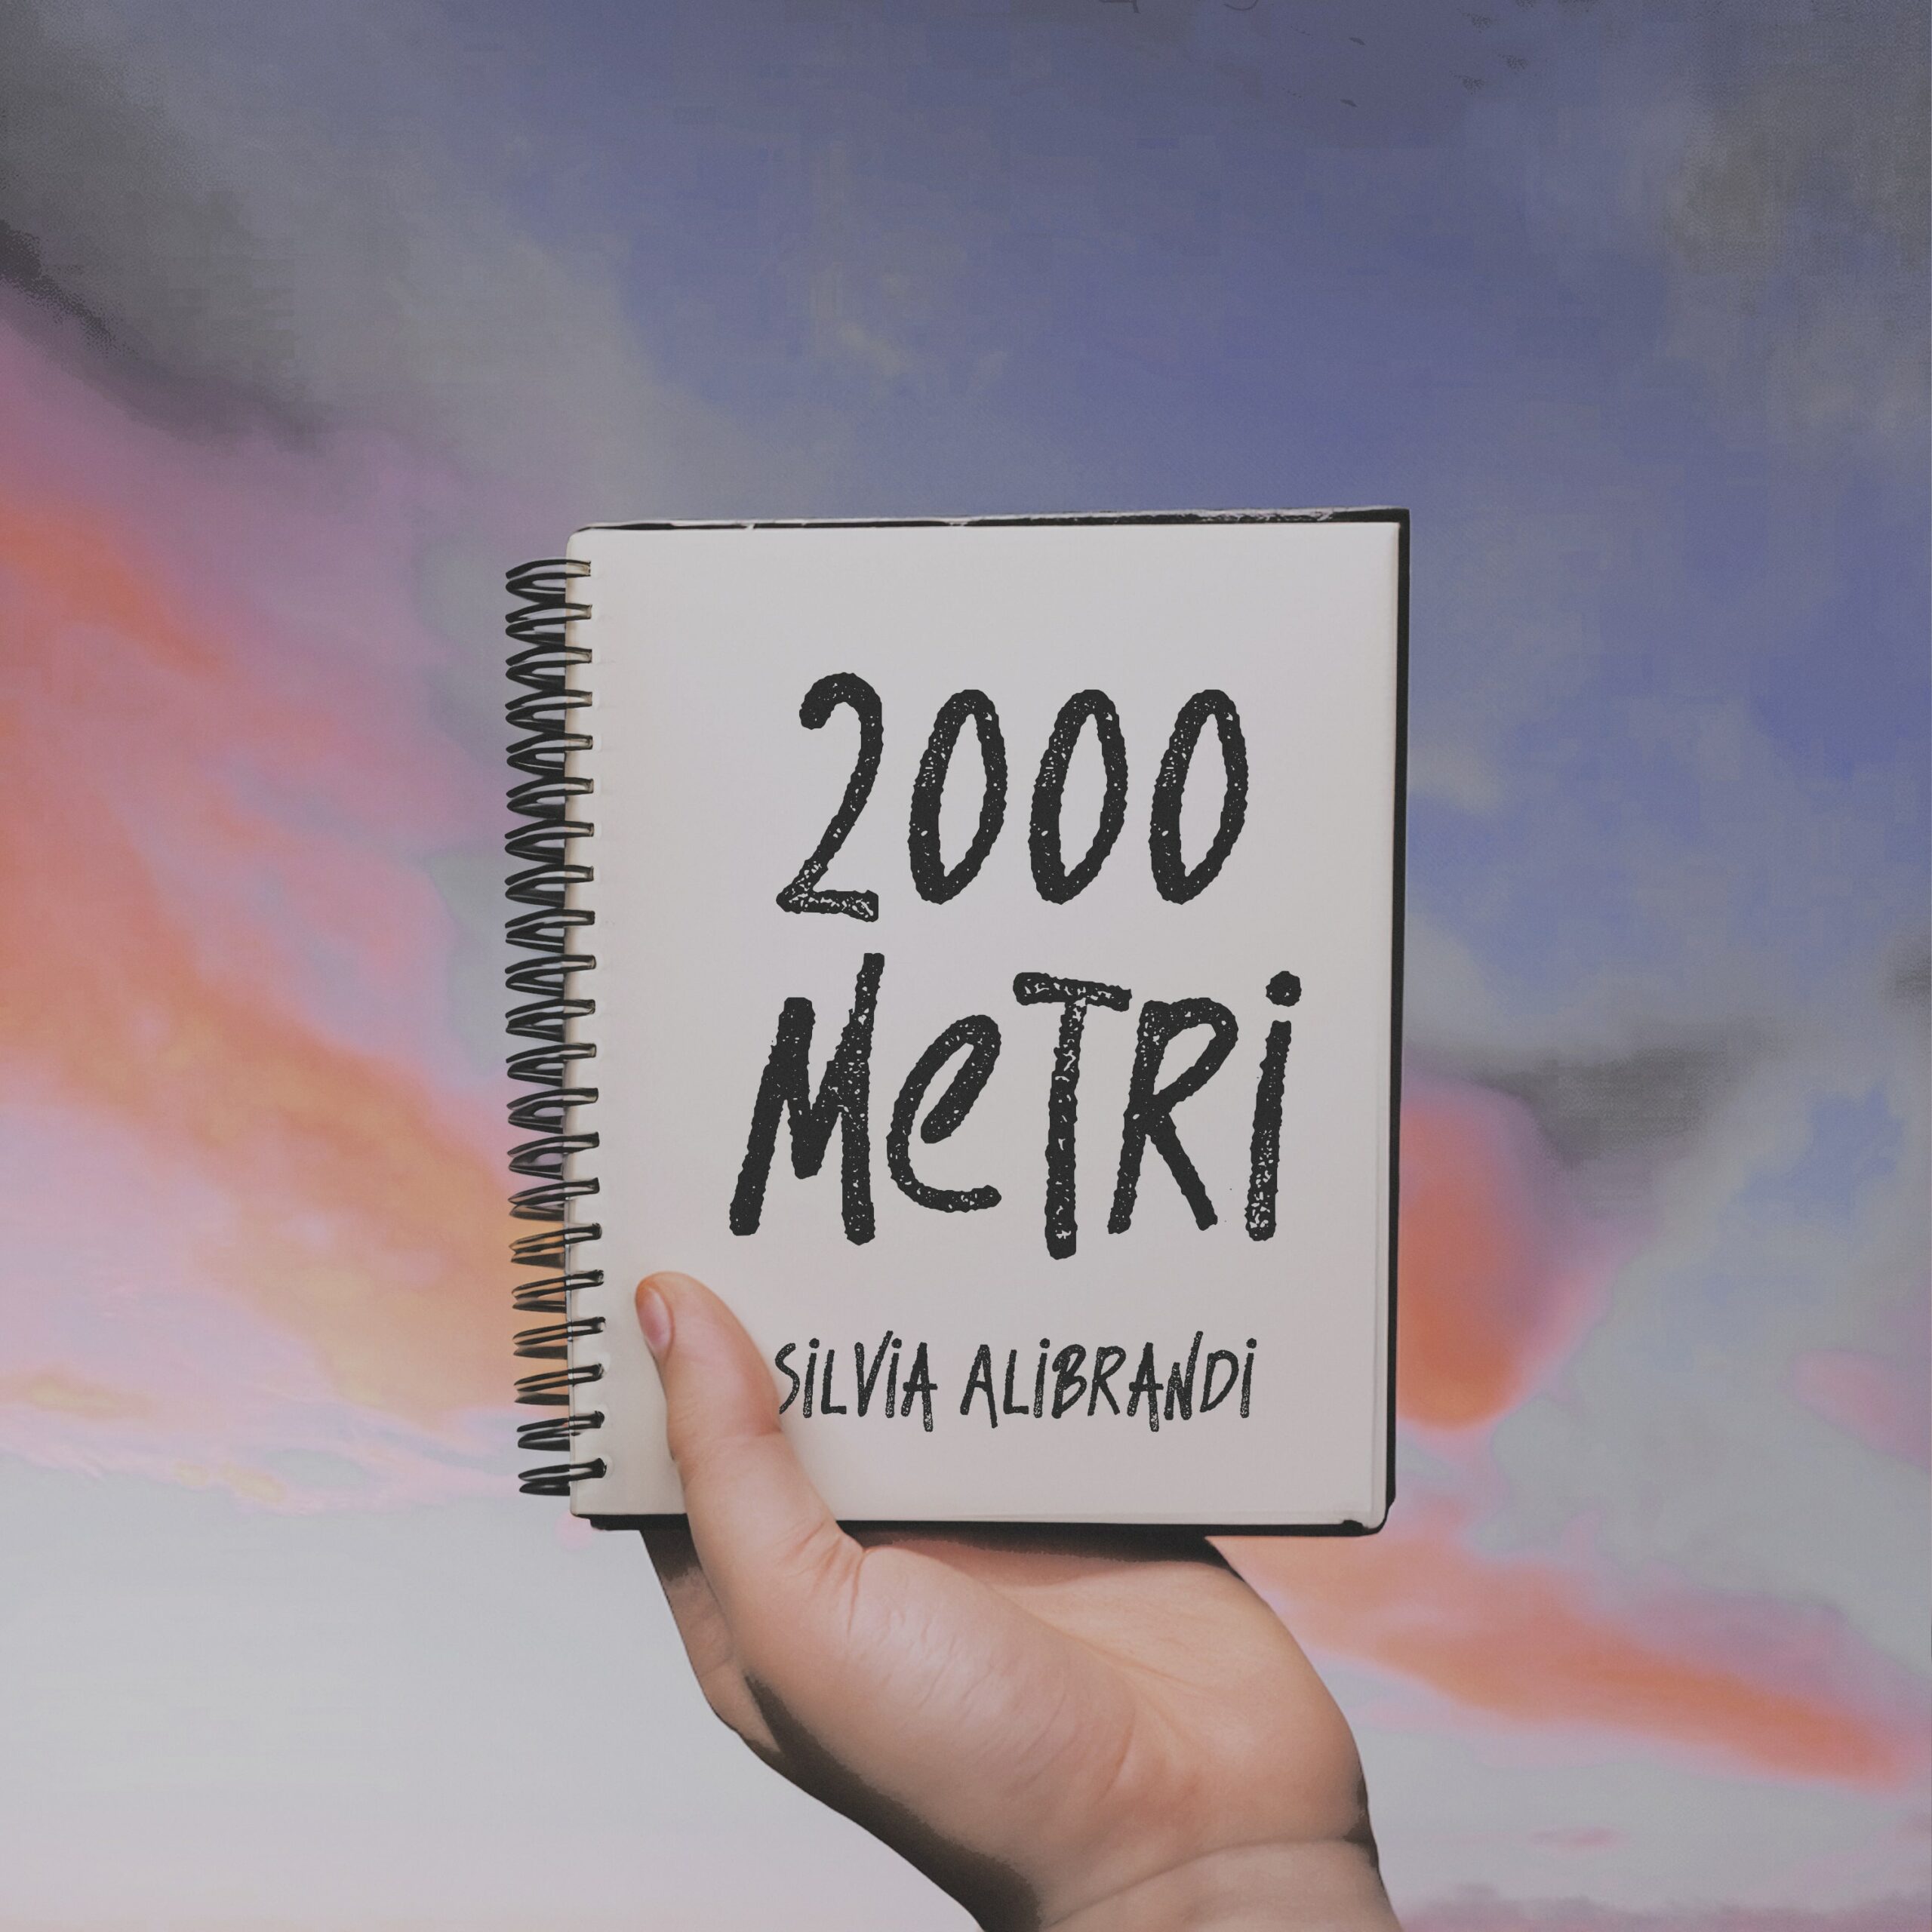 Al momento stai visualizzando “2000 METRI” è il nuovo singolo di Silvia Alibrandi